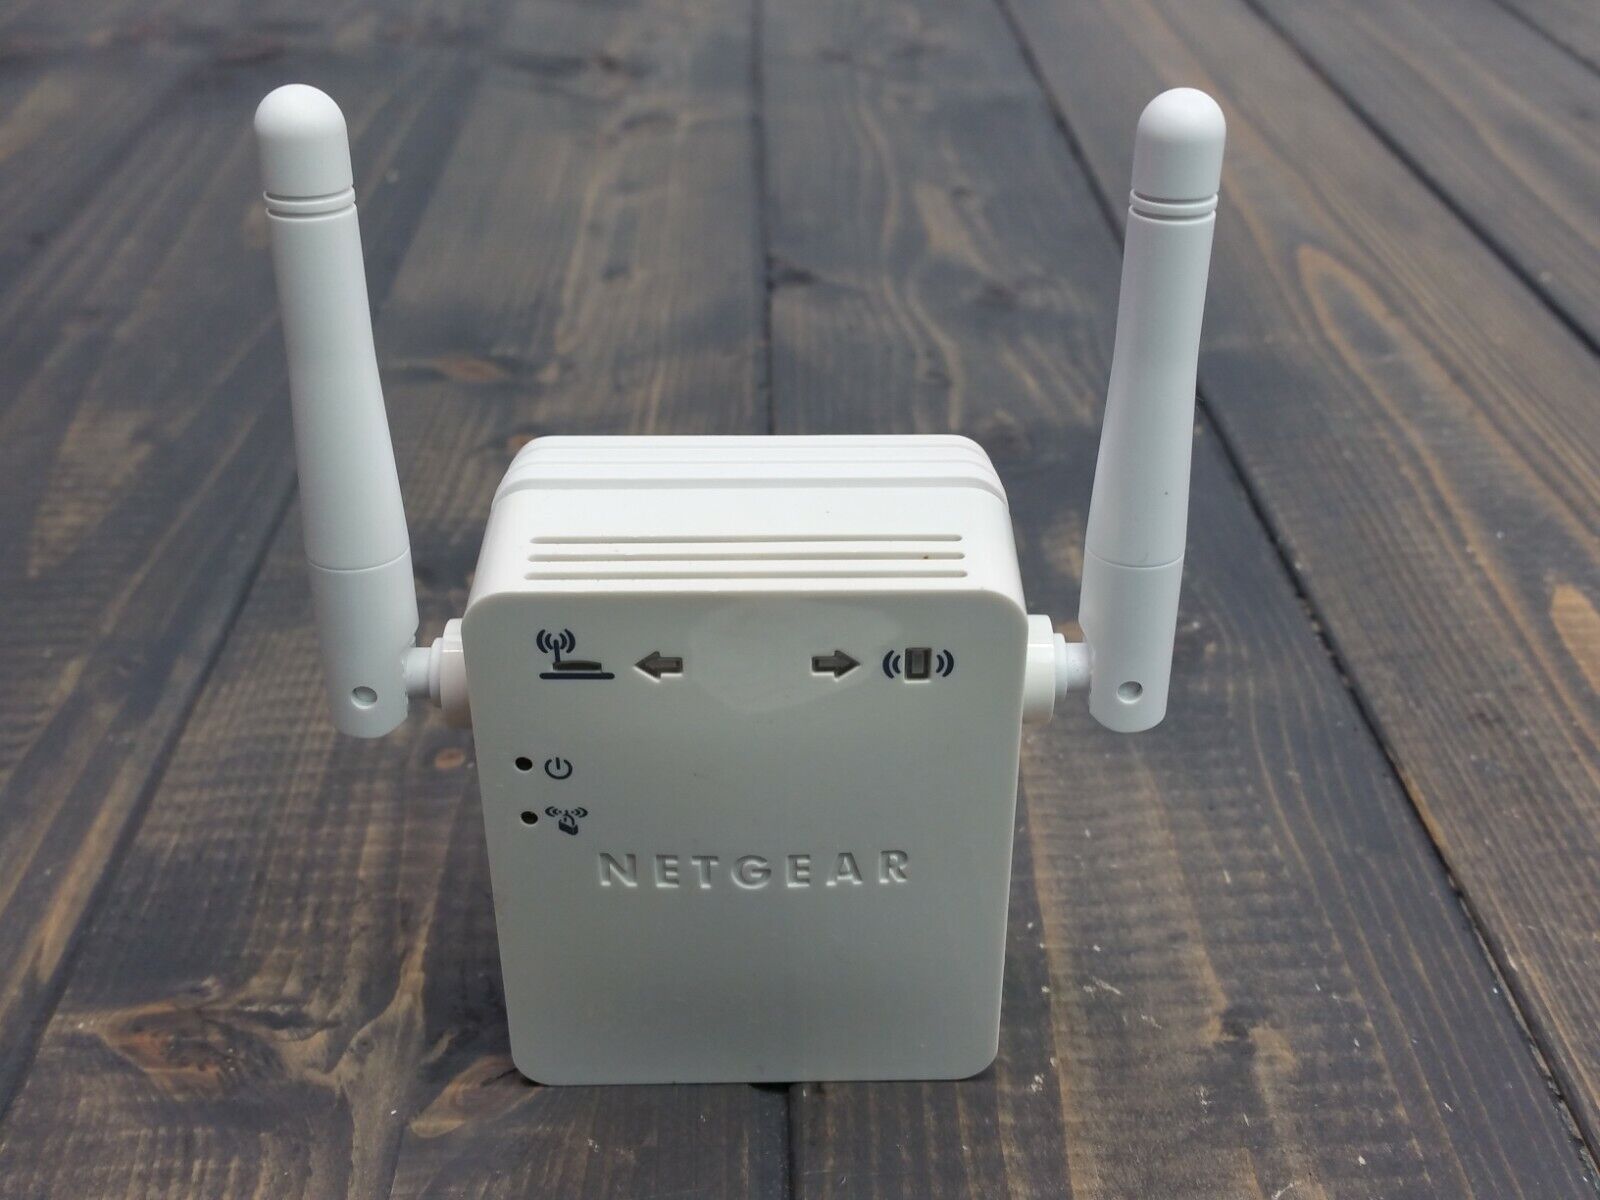 NETGEAR WN3000RPv2 Universal WiFi Range Extender - White